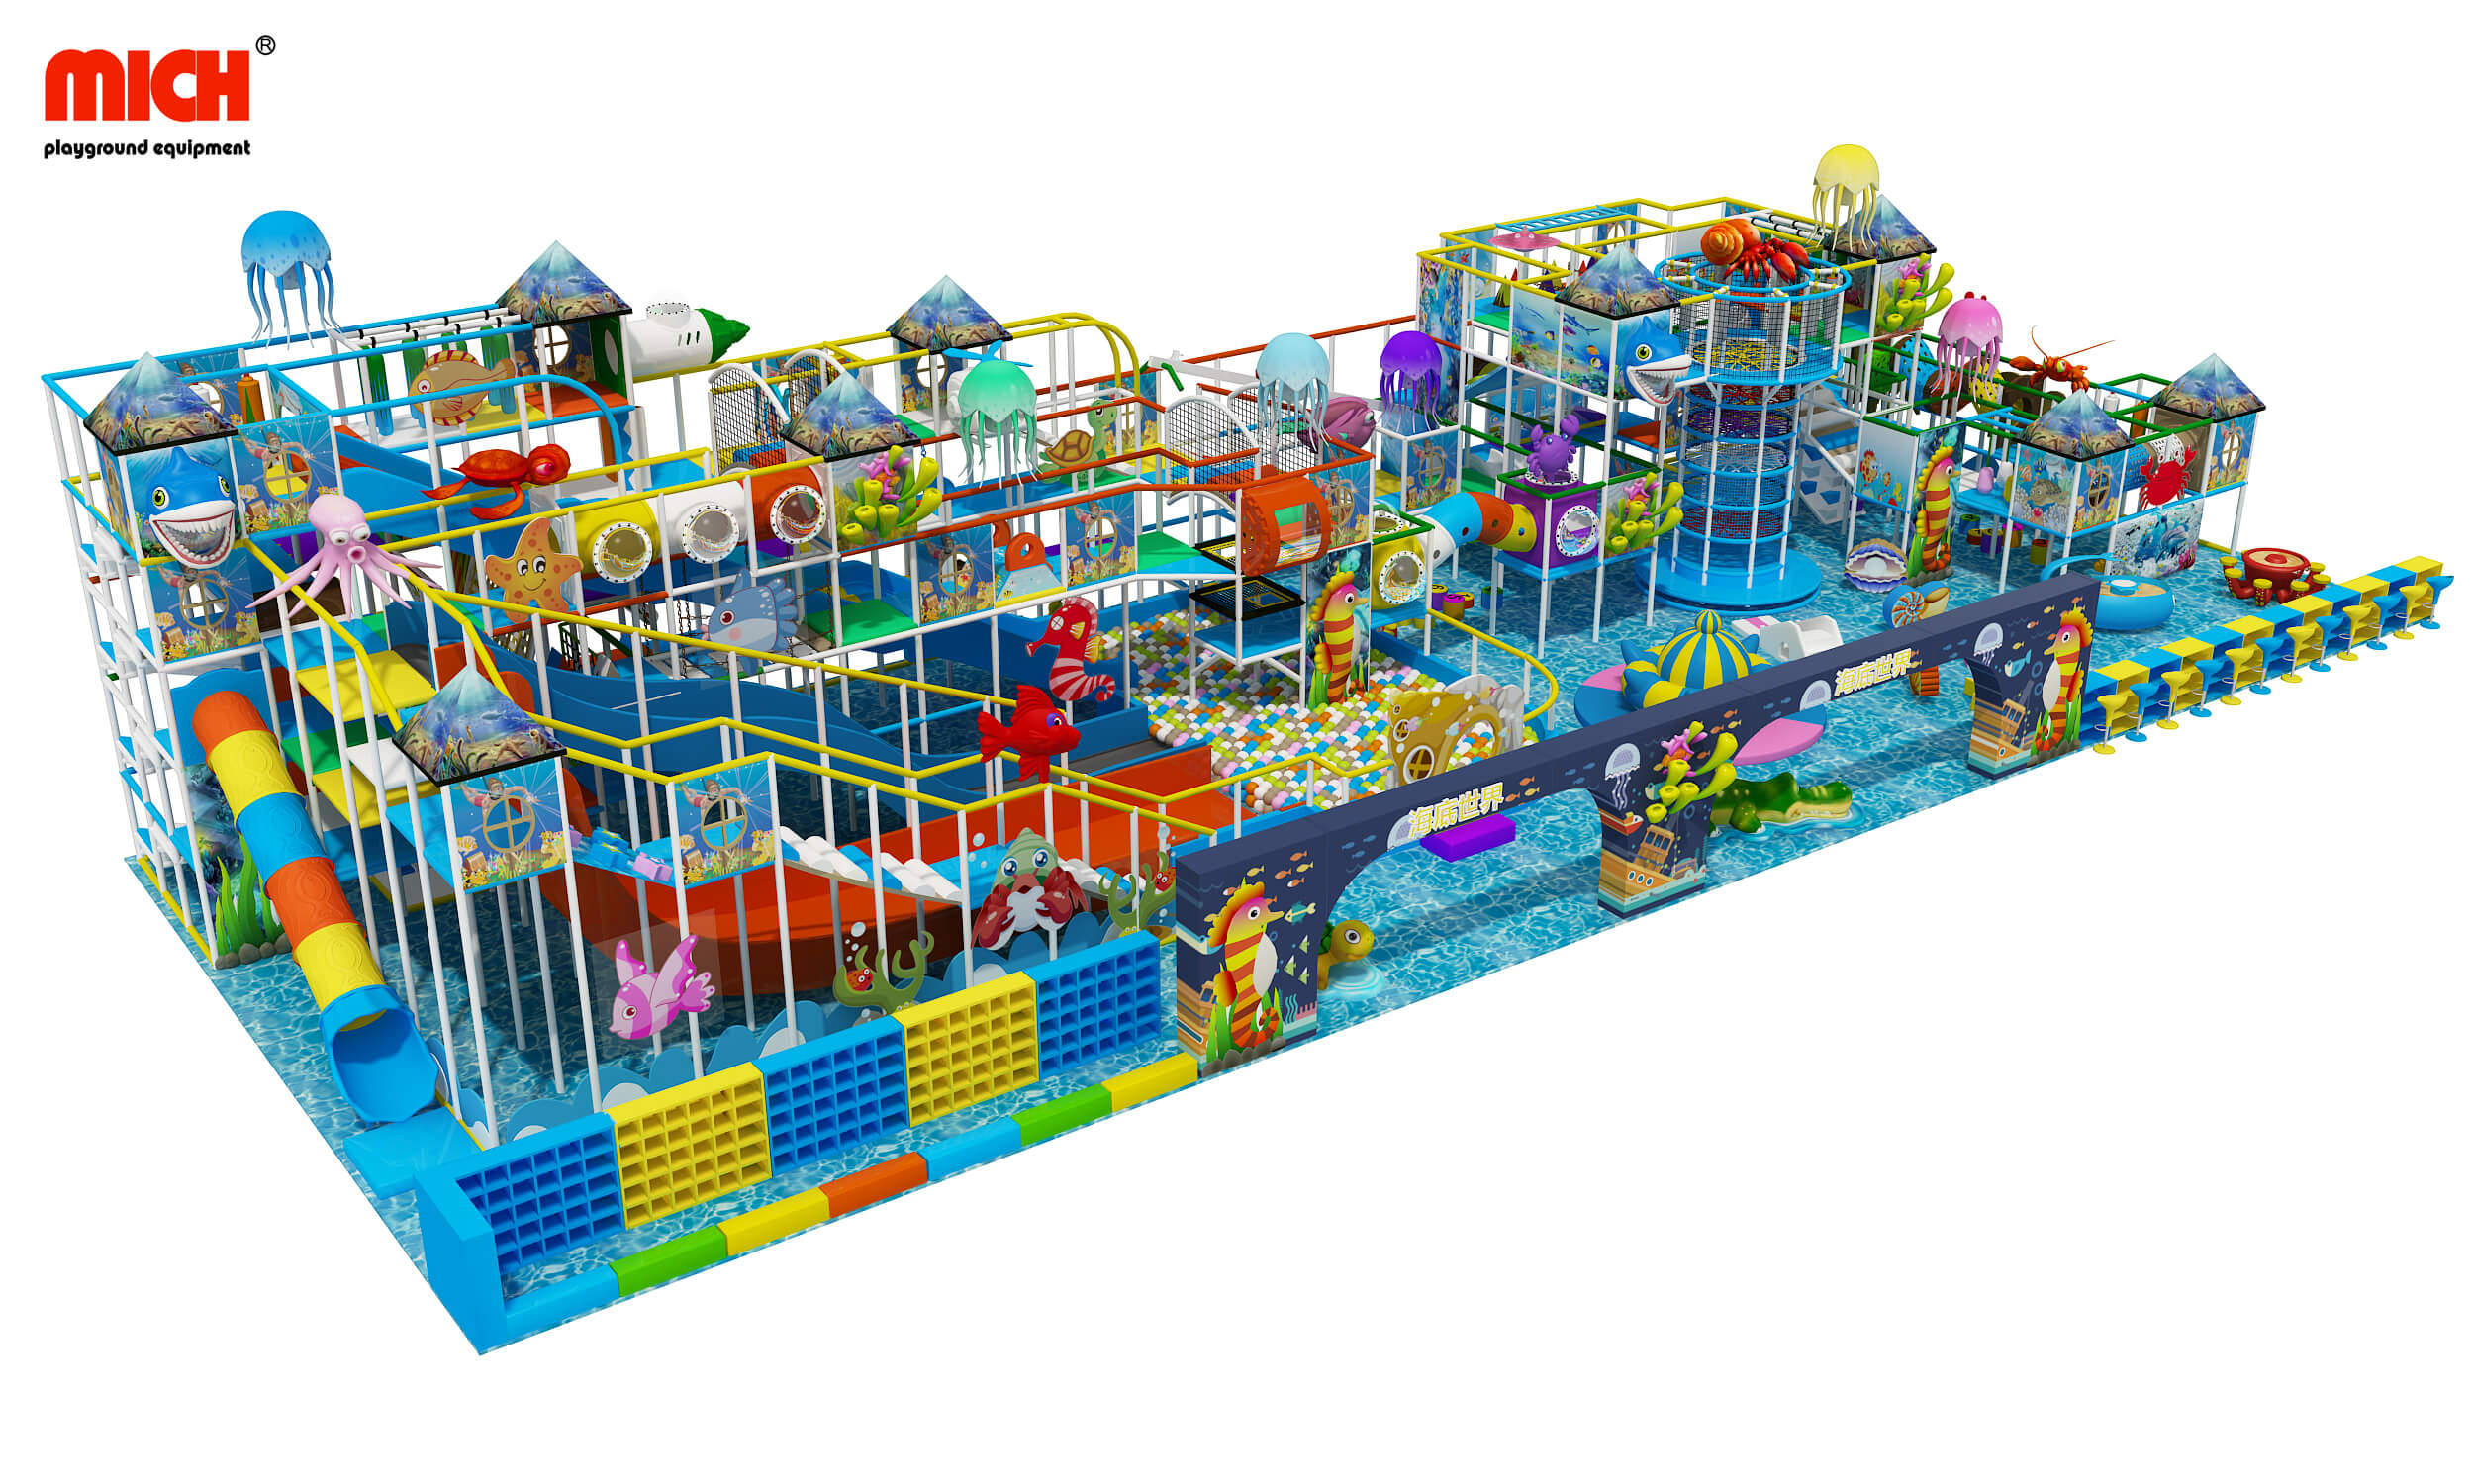 Centro de brincadeiras com temas de aquário com tema